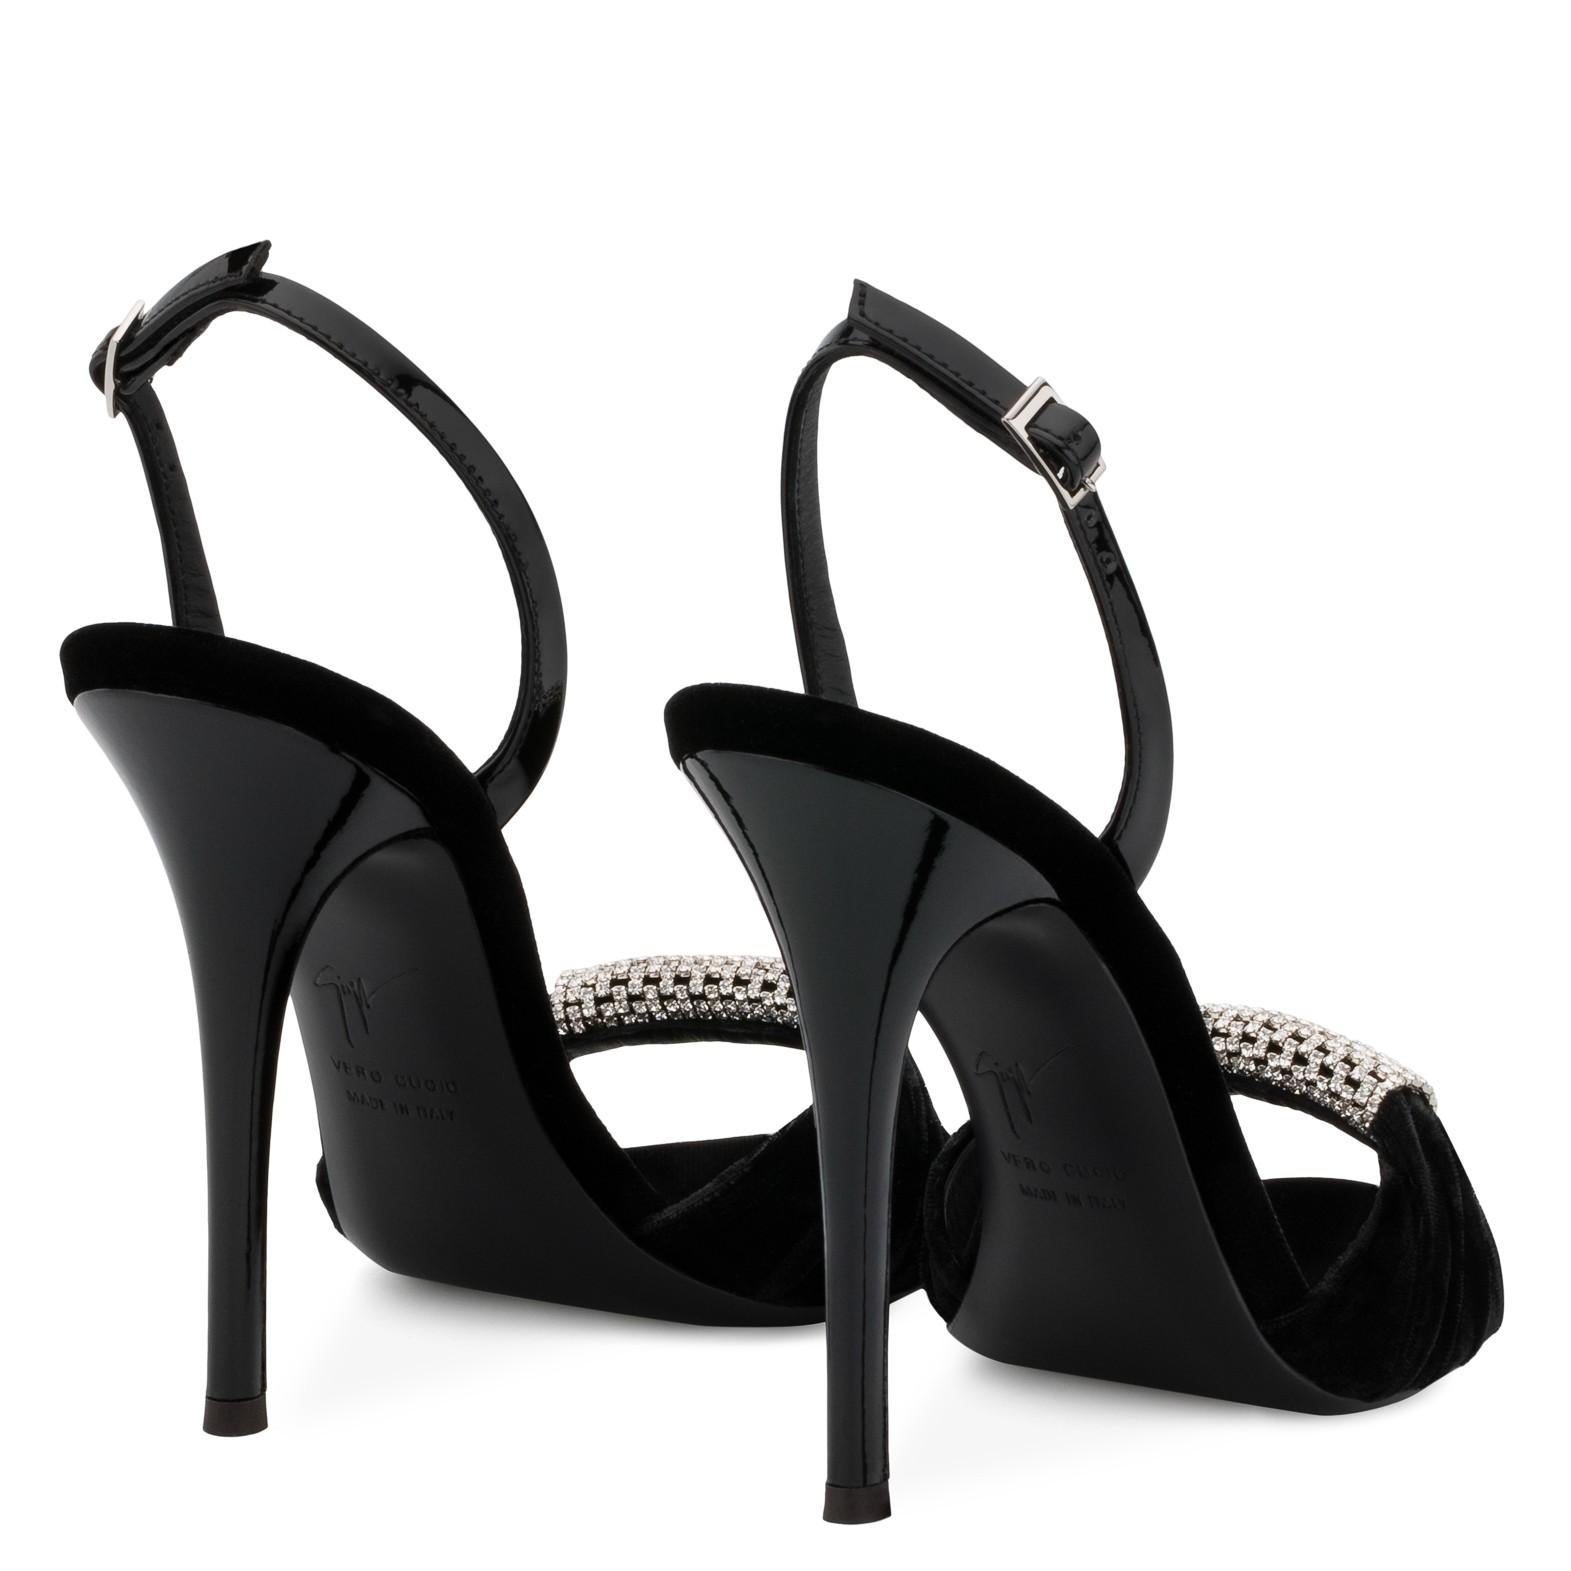 Giuseppe Zanotti NEW Black Patent Crystal Velvet Evening Sandals Heels in Box 2